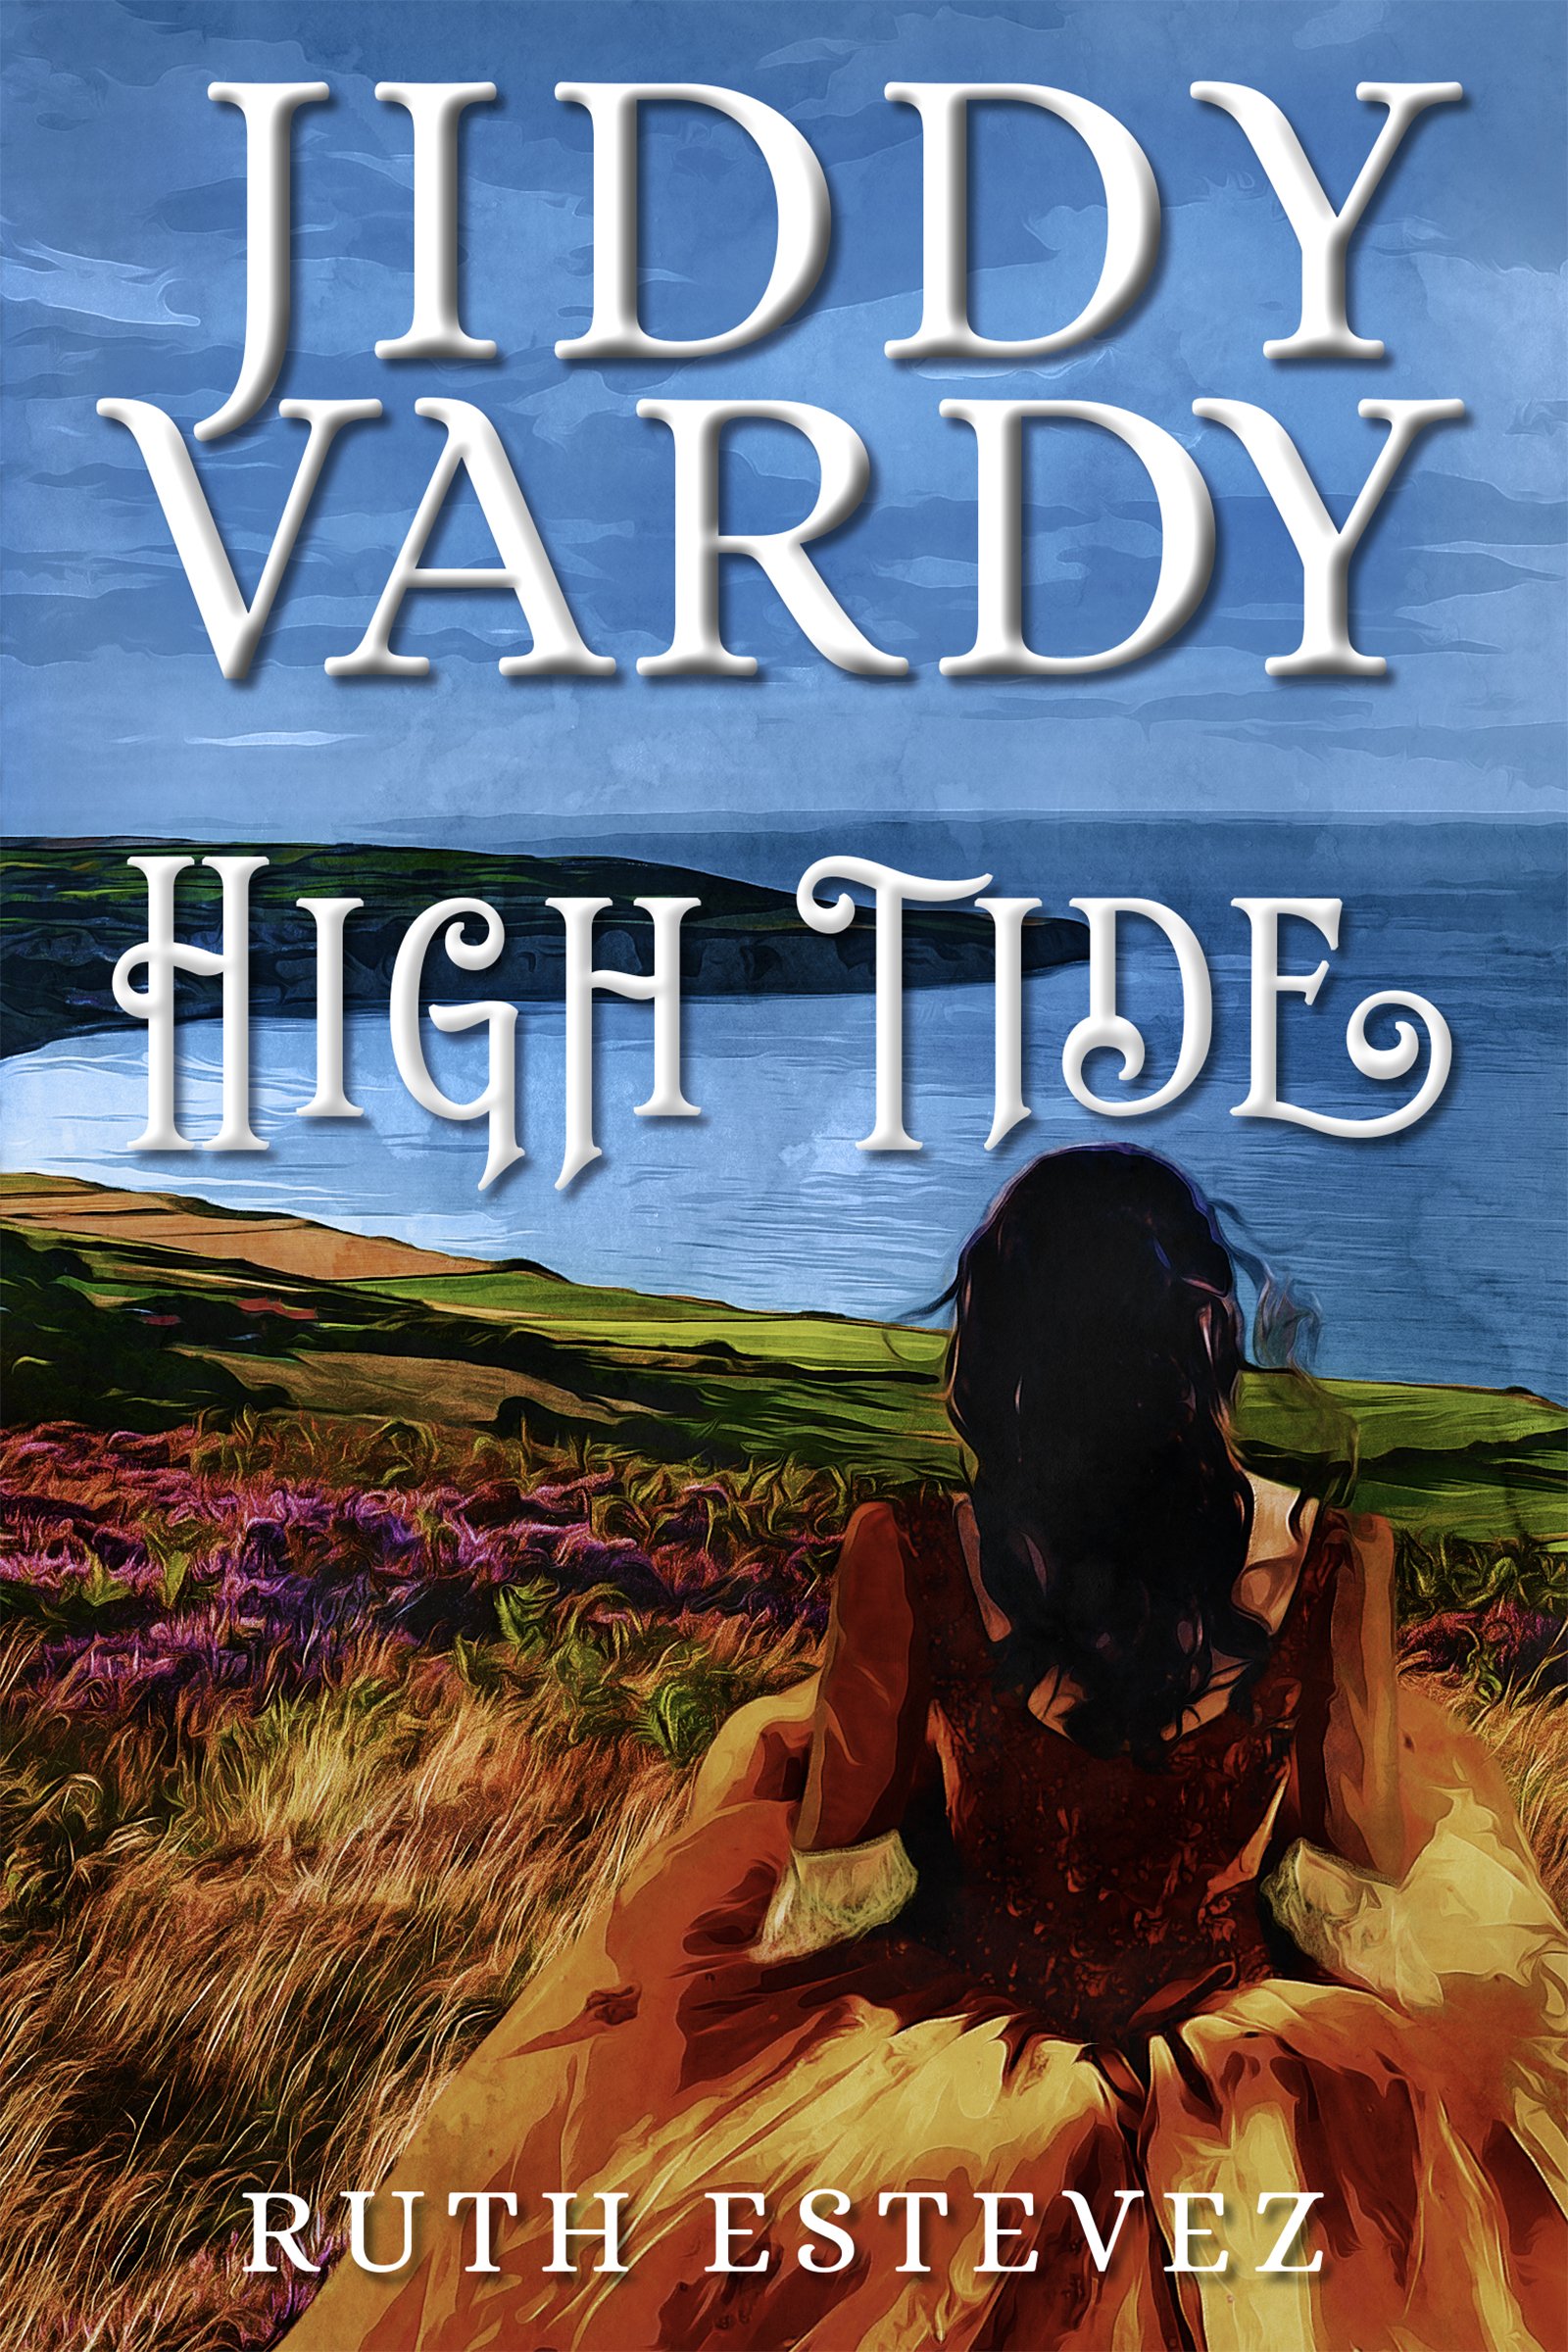 Jiddy Vardy High Tide (Book 2 in Trilogy)